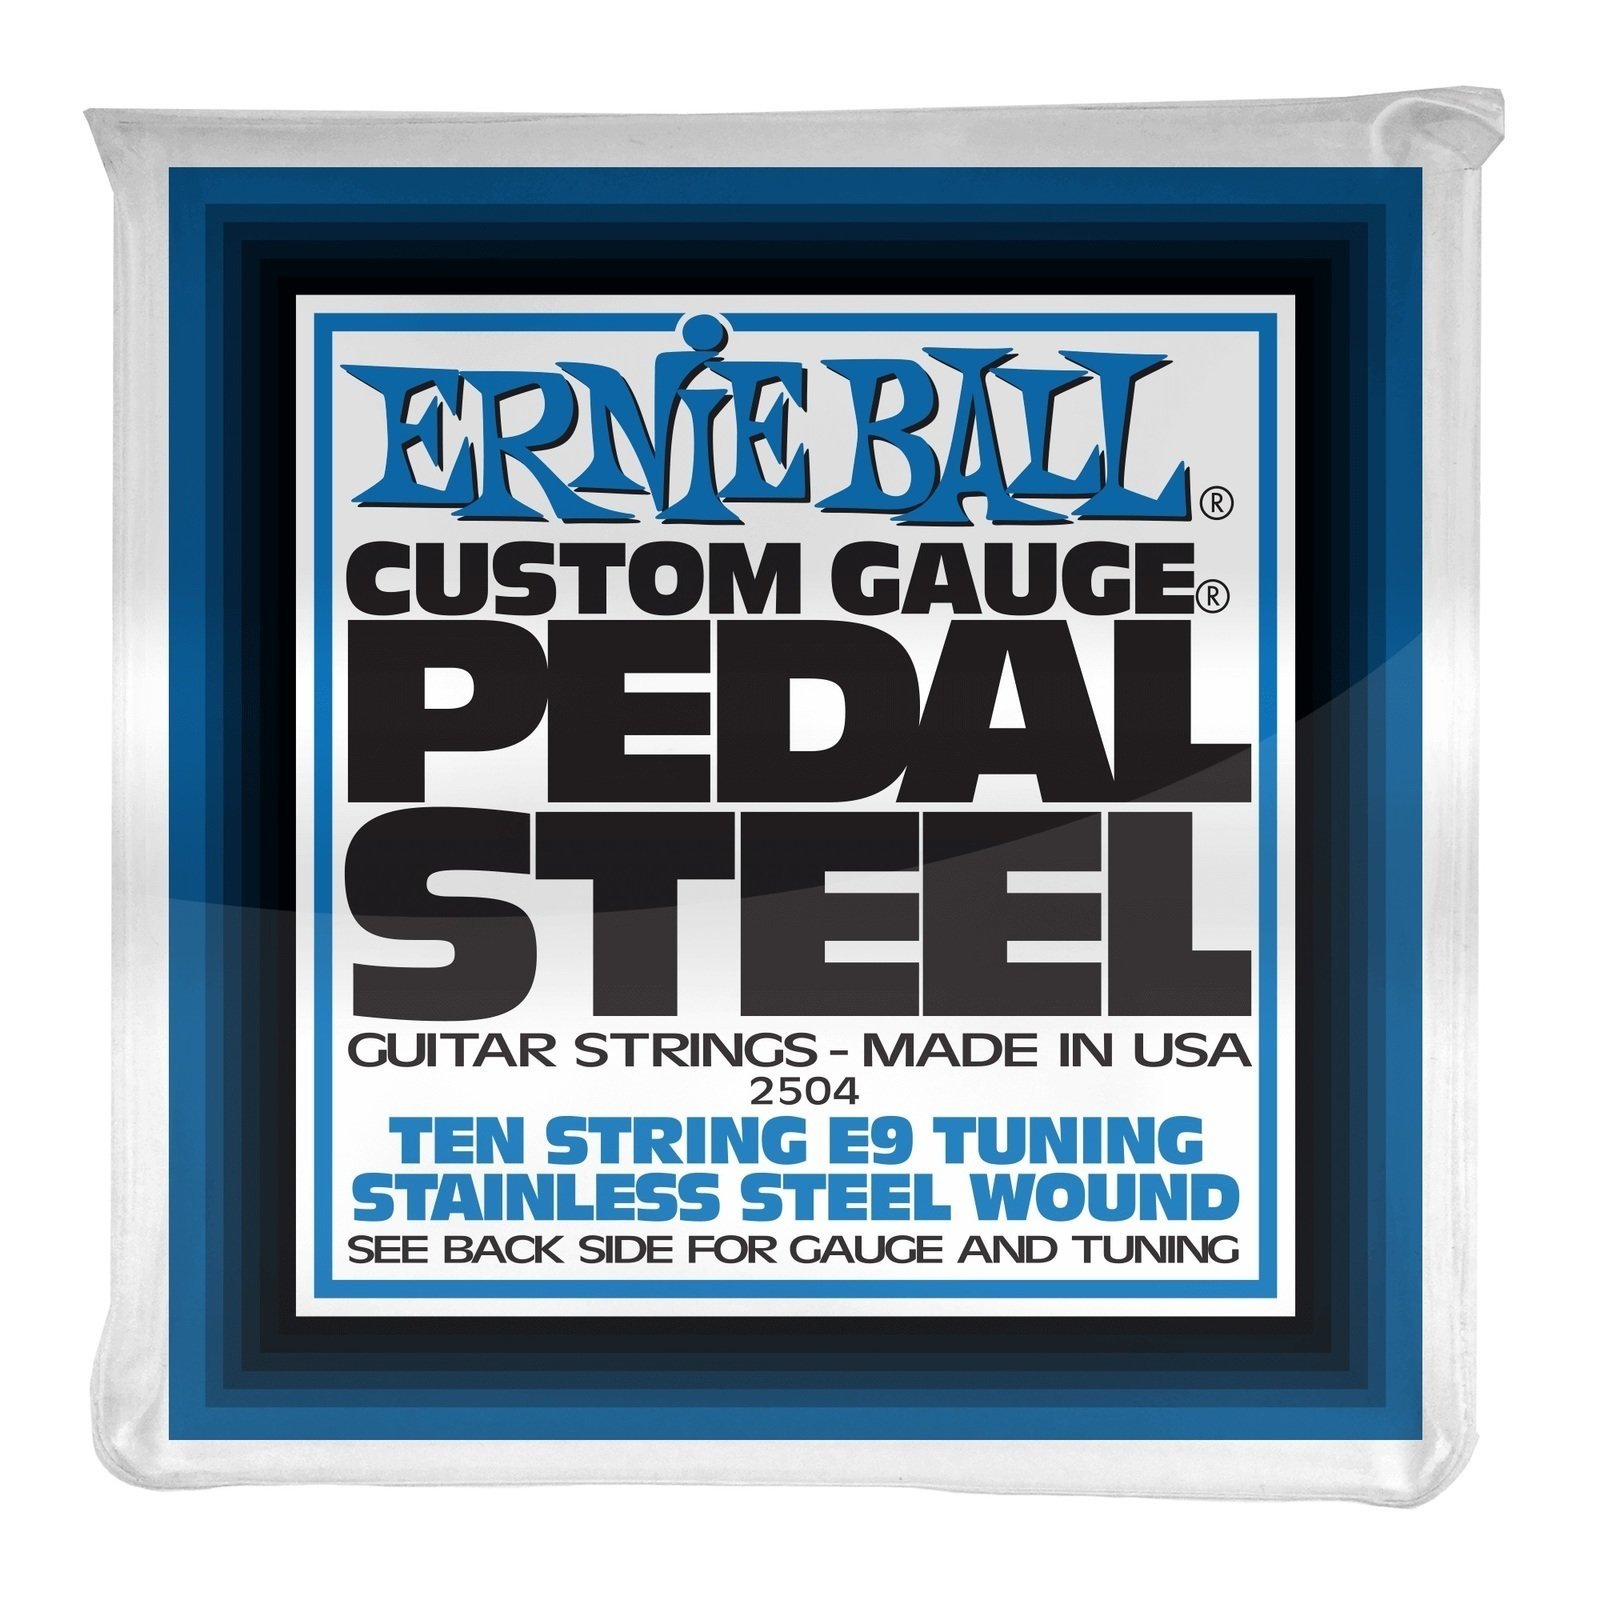 Autres jeux de cordes Ernie Ball 2504 Pedal Steel